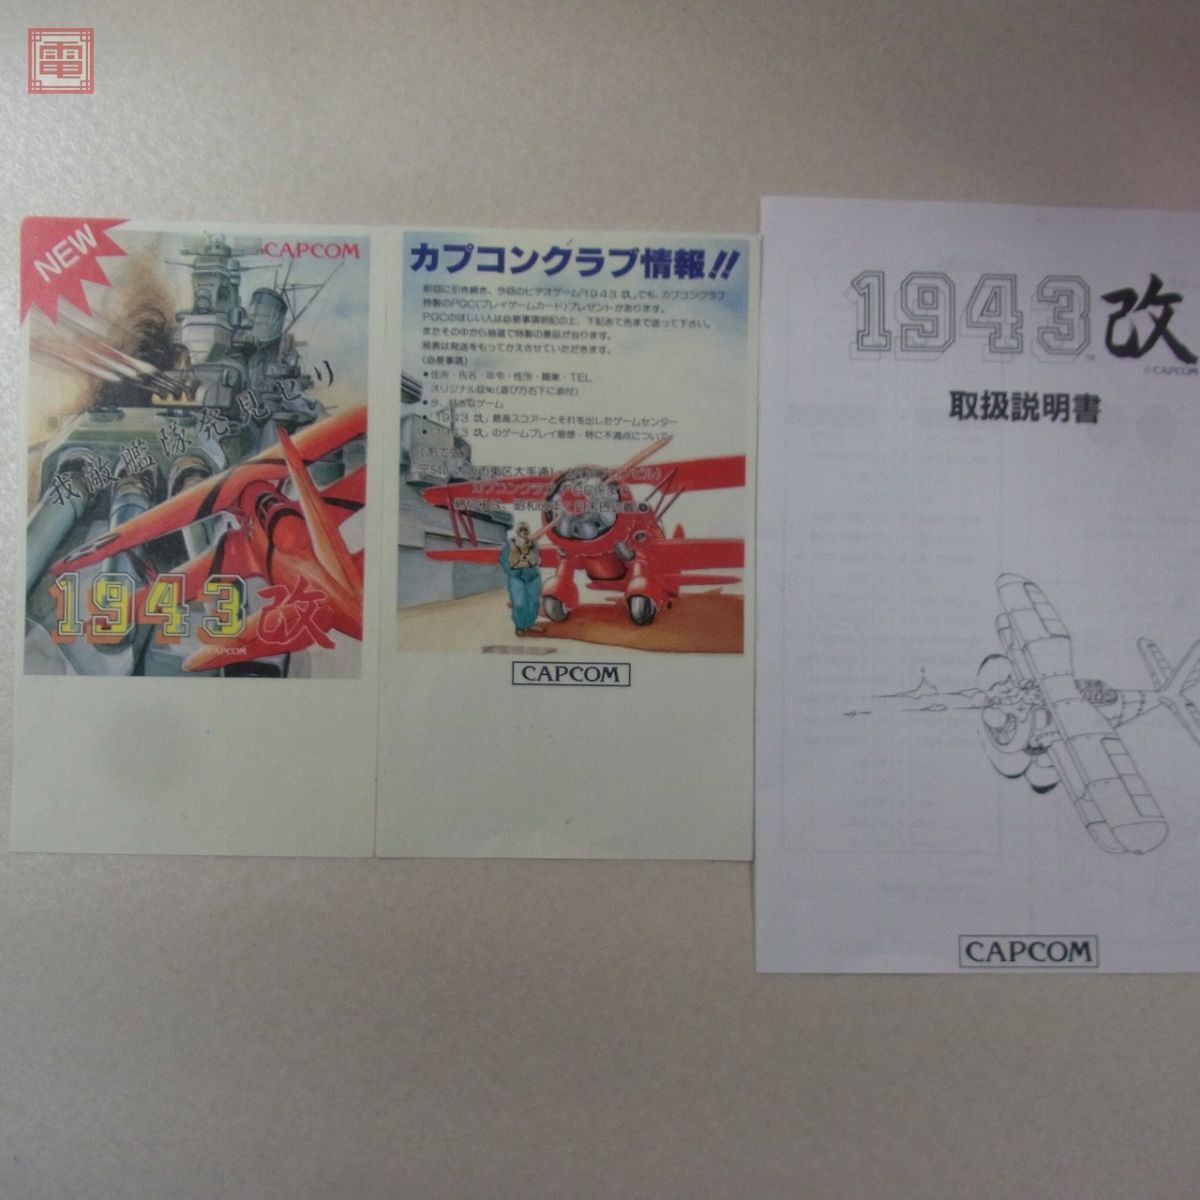 1 иен ~ Capcom /CAPCOM 1943 модифицировано mid way море битва рабочее состояние подтверждено [20